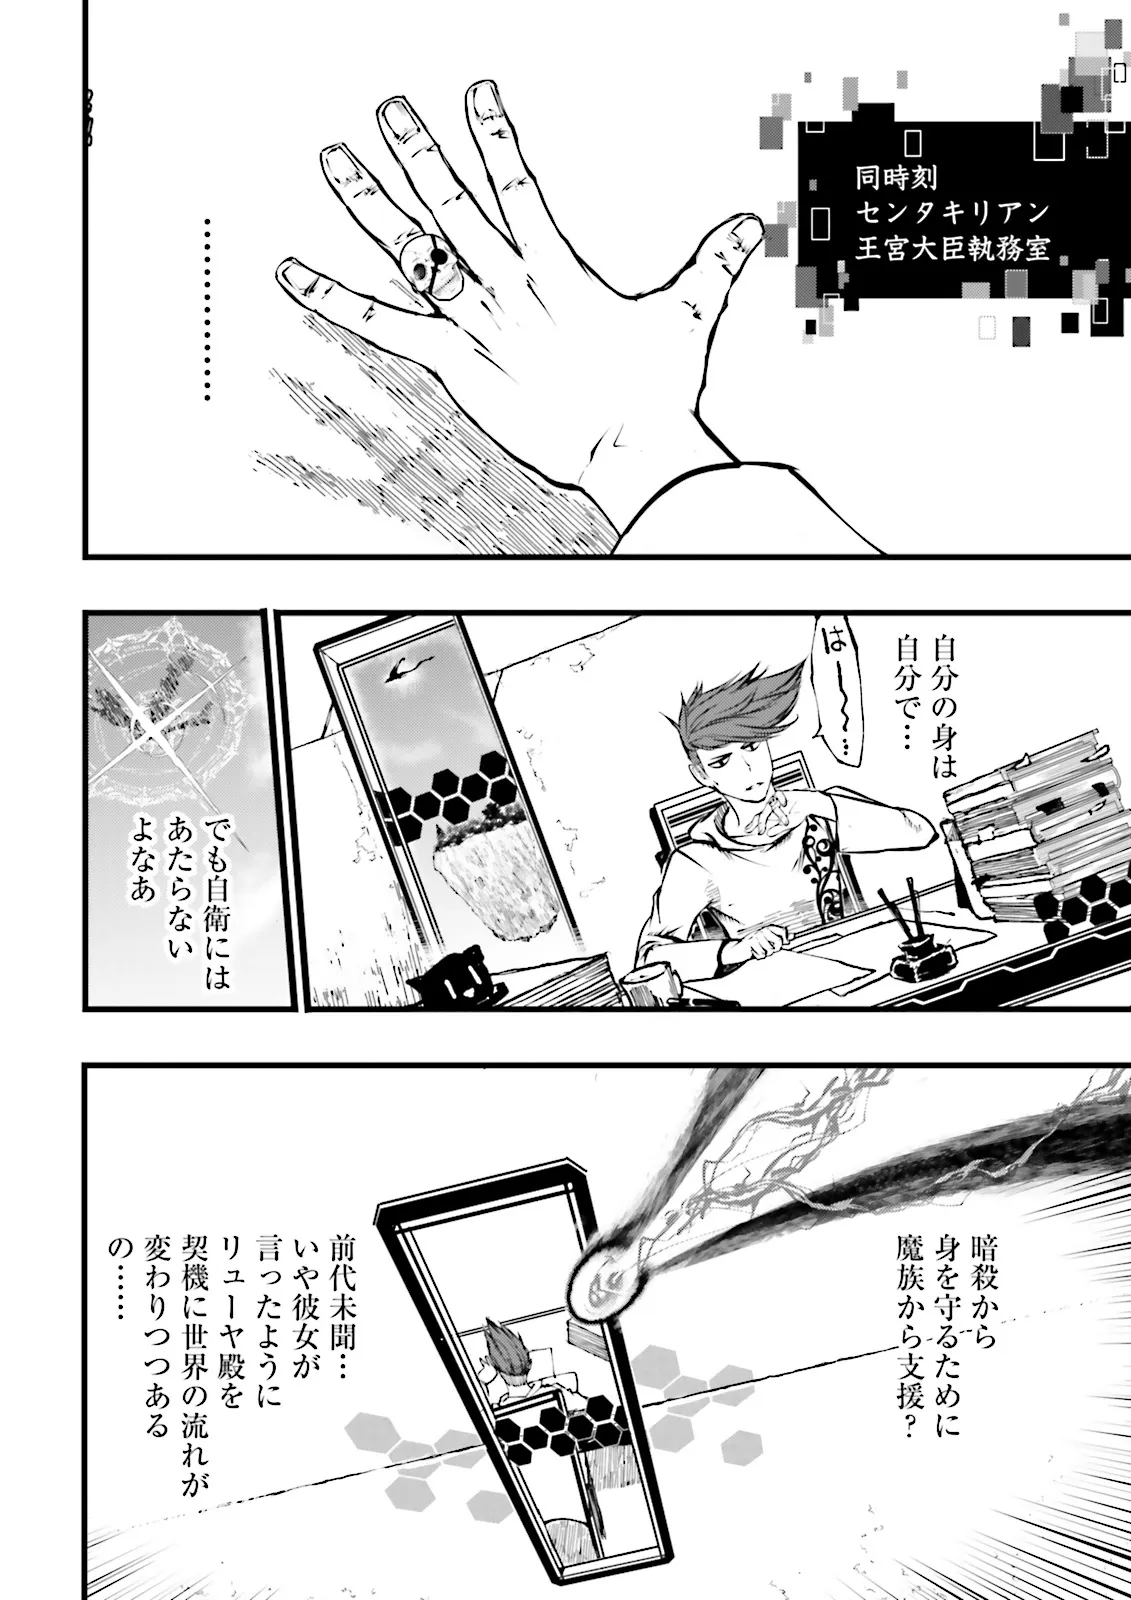 Sukiru Ga Nakereba Level wo Ageru ~ 99 Ga Kansuto No Sekai De Reberu 800 Man Kara Sutato ~ - Chapter 39.2 - Page 10